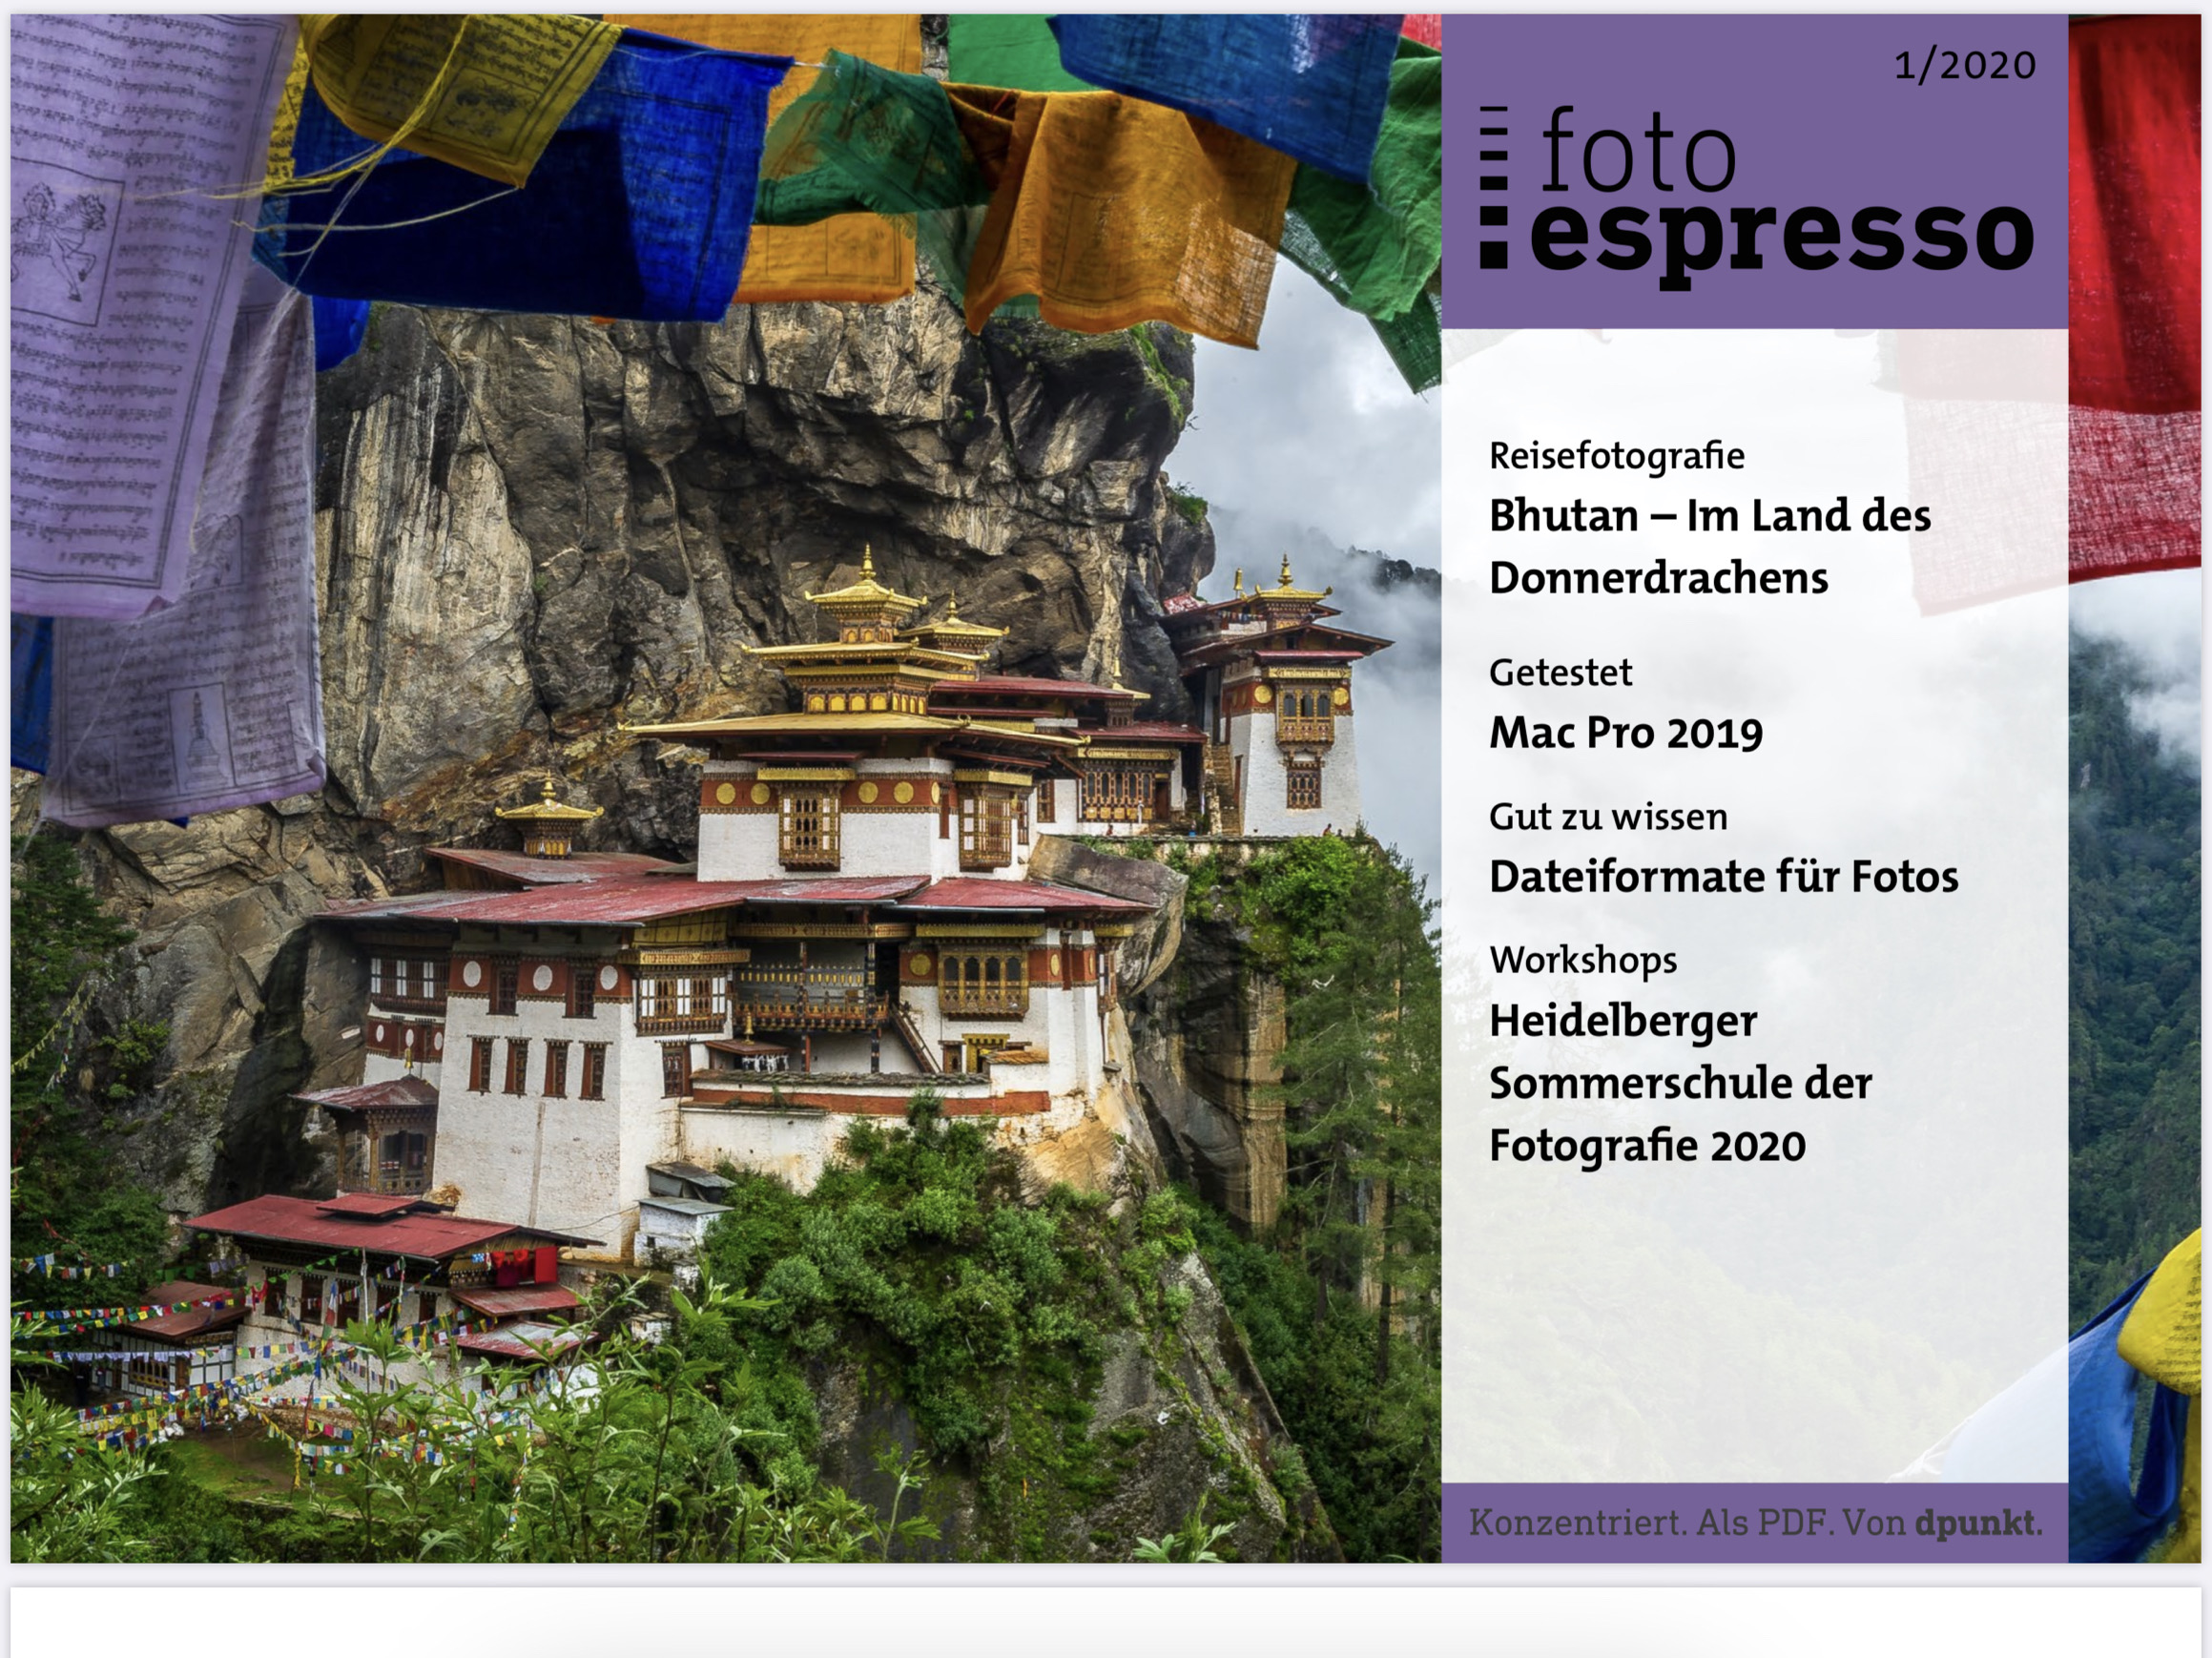 Fotoespresso-Titel: Bhutan - Im Land des Donnerdrachen